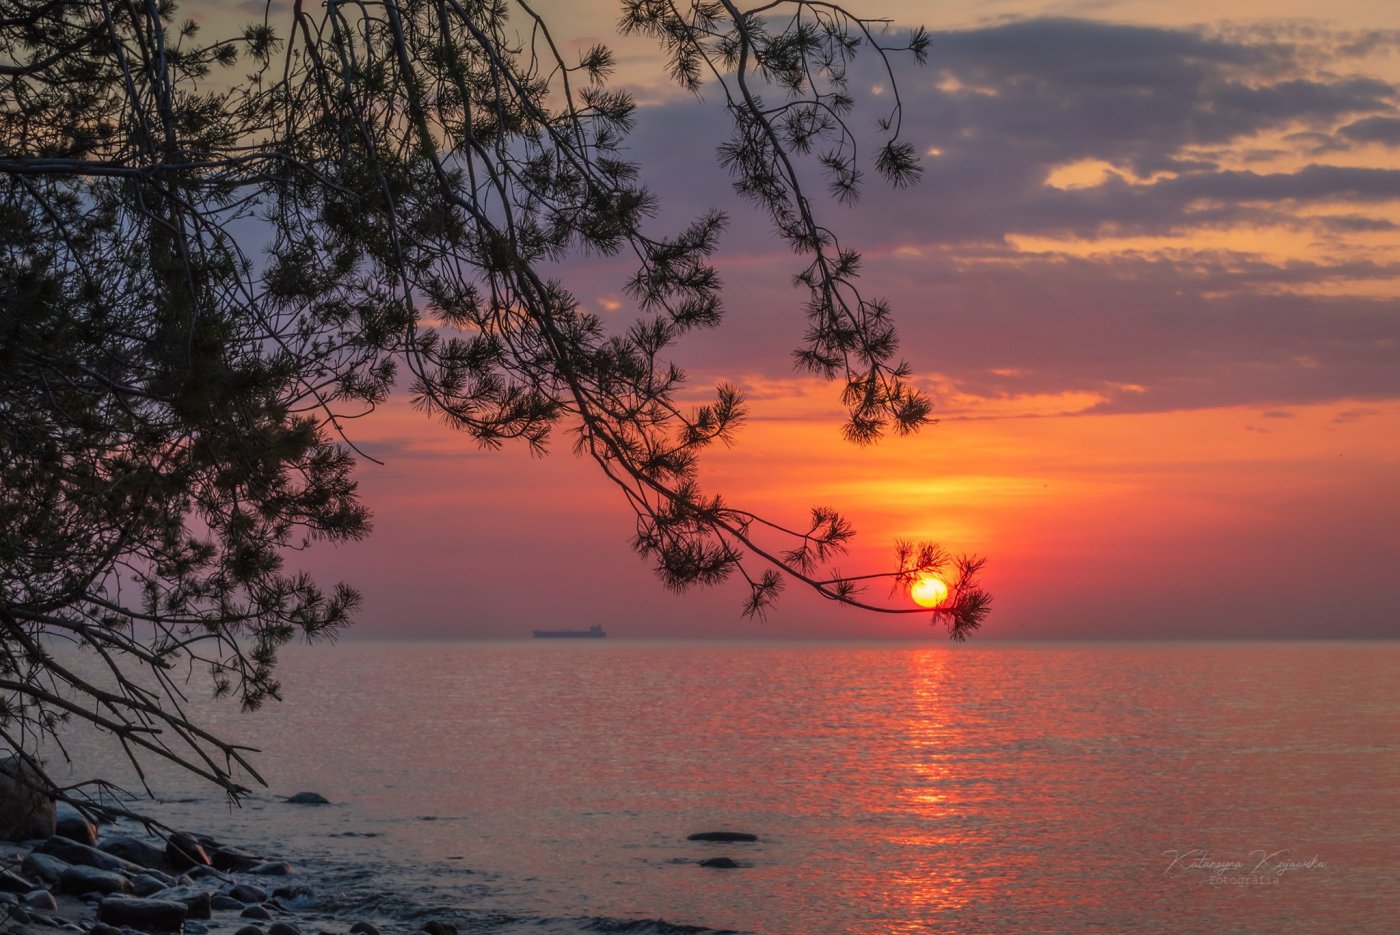 Wschód słońca w Gdyni. Pomarańczowo-niebieskie niebo, po lewej stronie drzewo, na dole kadru widać kawałek plaży oraz morze. fot. Katarzyna Kujawska (zdjęcie z grupy FB 